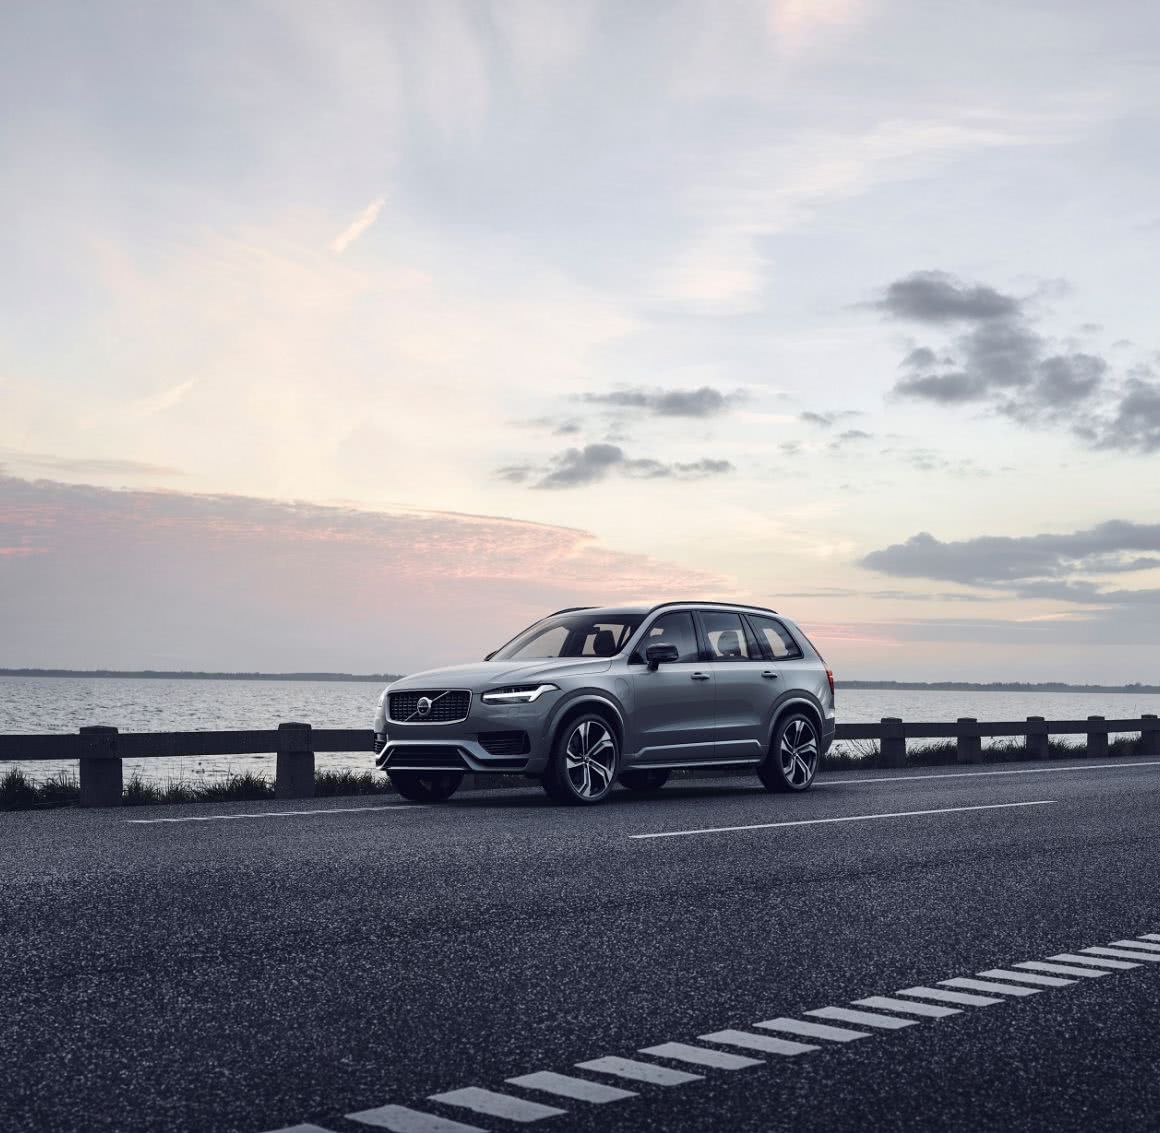 Jaki jest największy SUV marki Volvo? Oceniamy model XC90